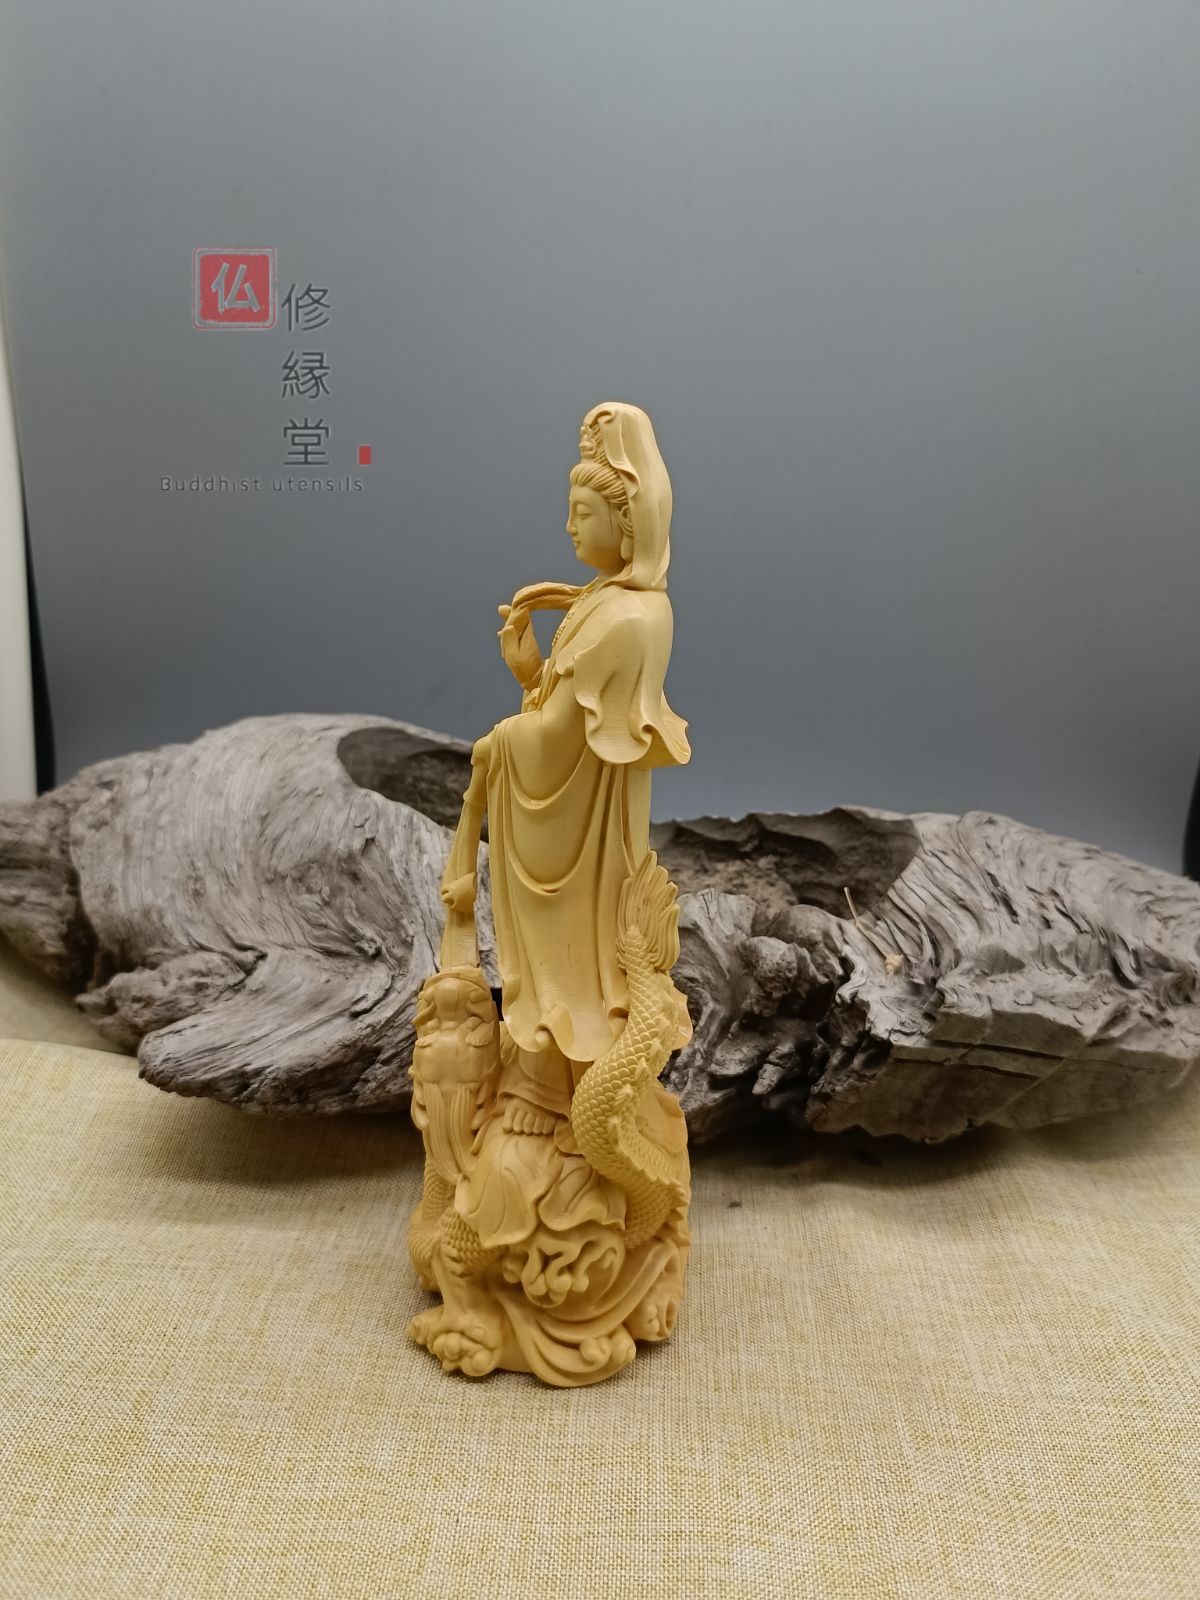 木彫り 仏像 鰲魚自在観音菩薩座像 財前彫刻 柘植材 ご利益 - 彫刻